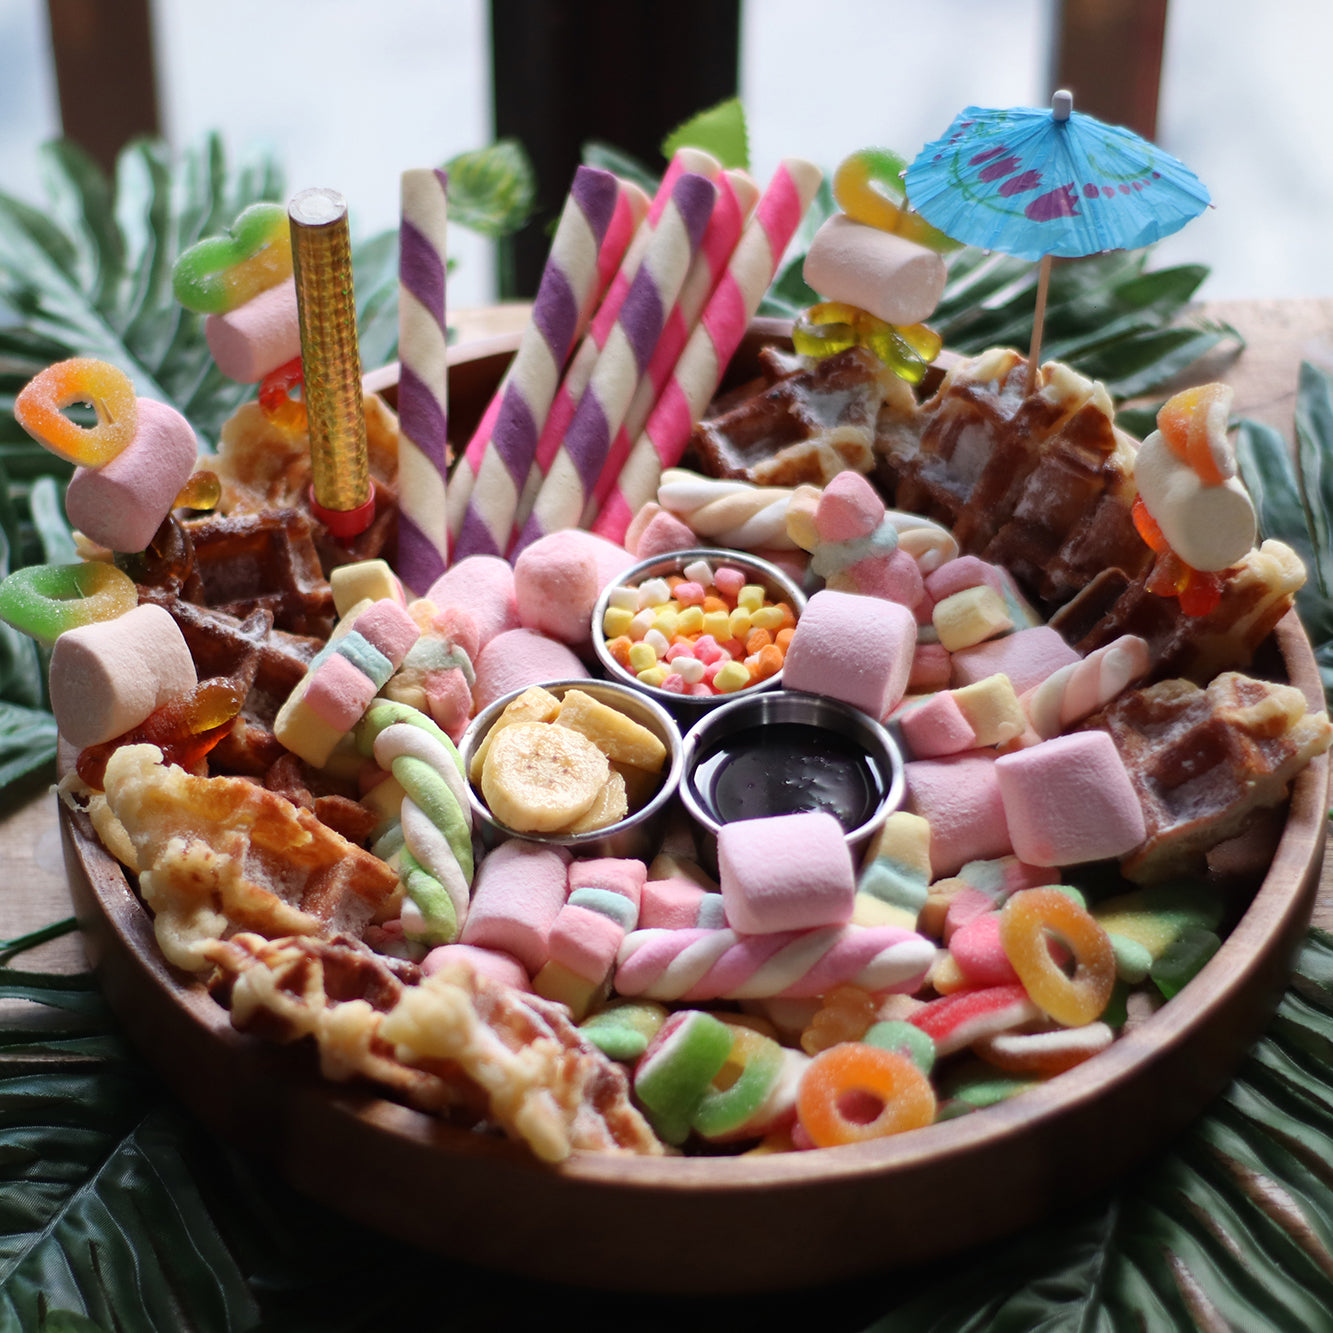 Best Dessert in Bohol - Craze Candy & Dessert Bar - Bohol Candyland